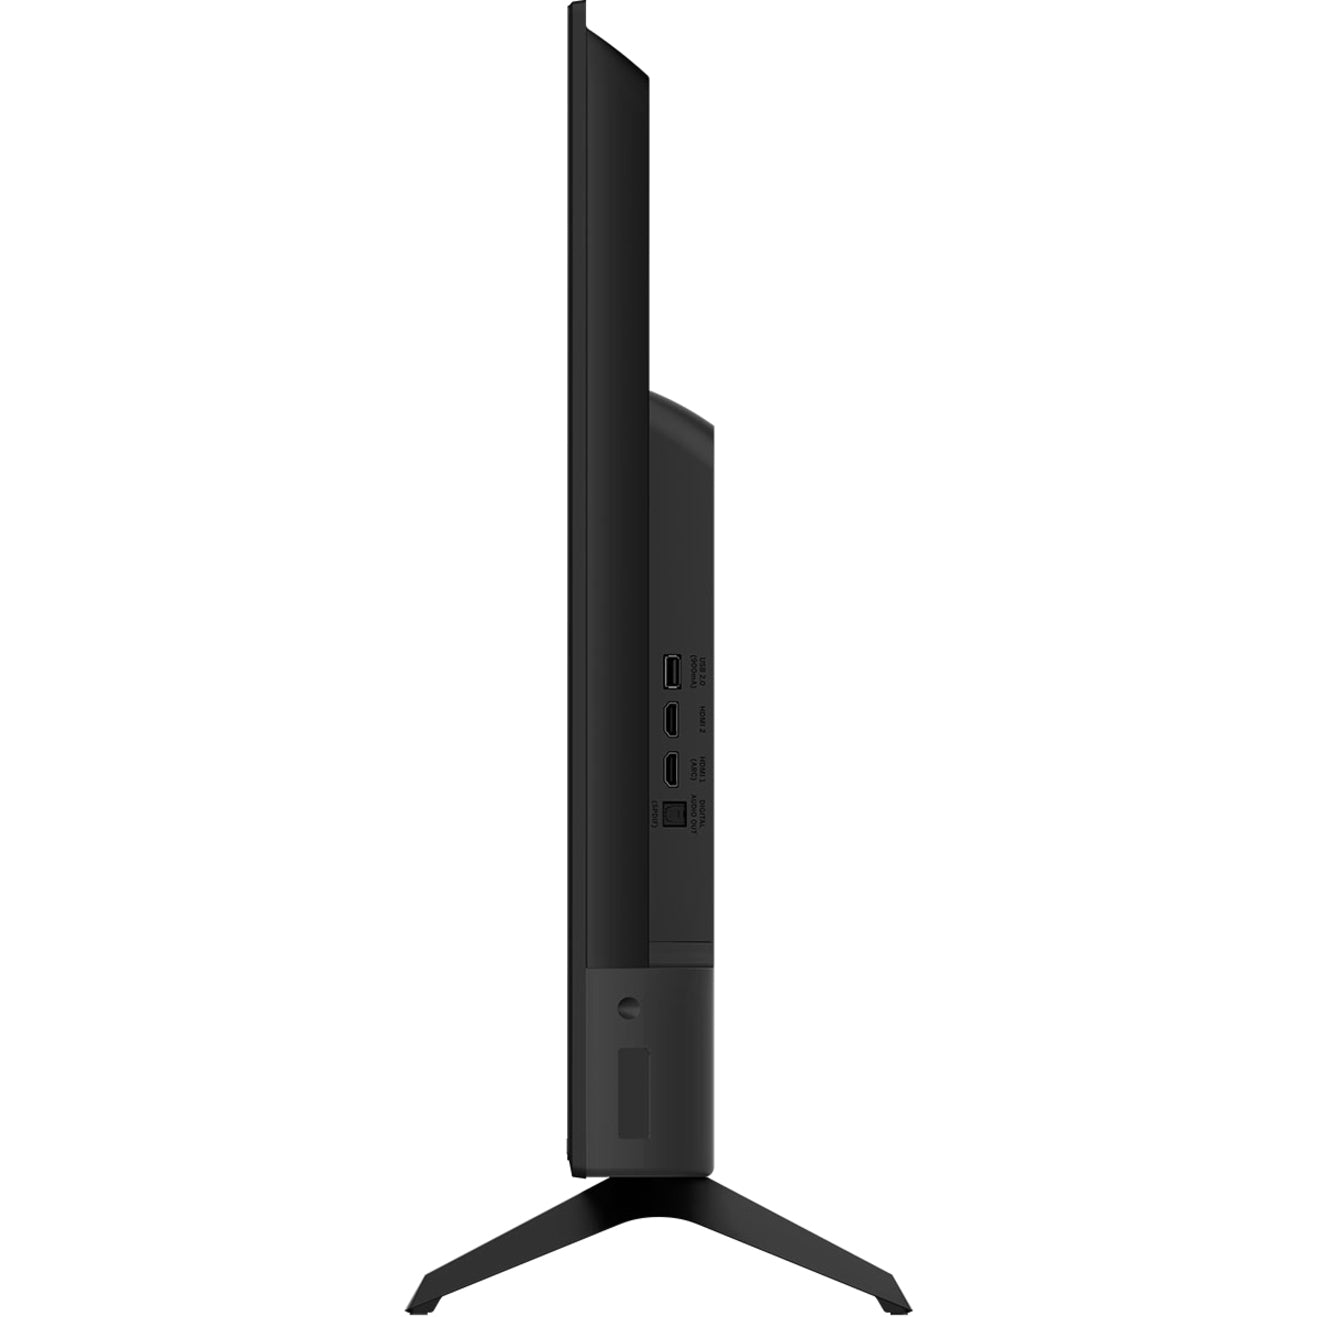 VIZIO D43F-J04 D-Series 43" Smart LED-LCD TV, Full HD, Chromecast, Game Mode